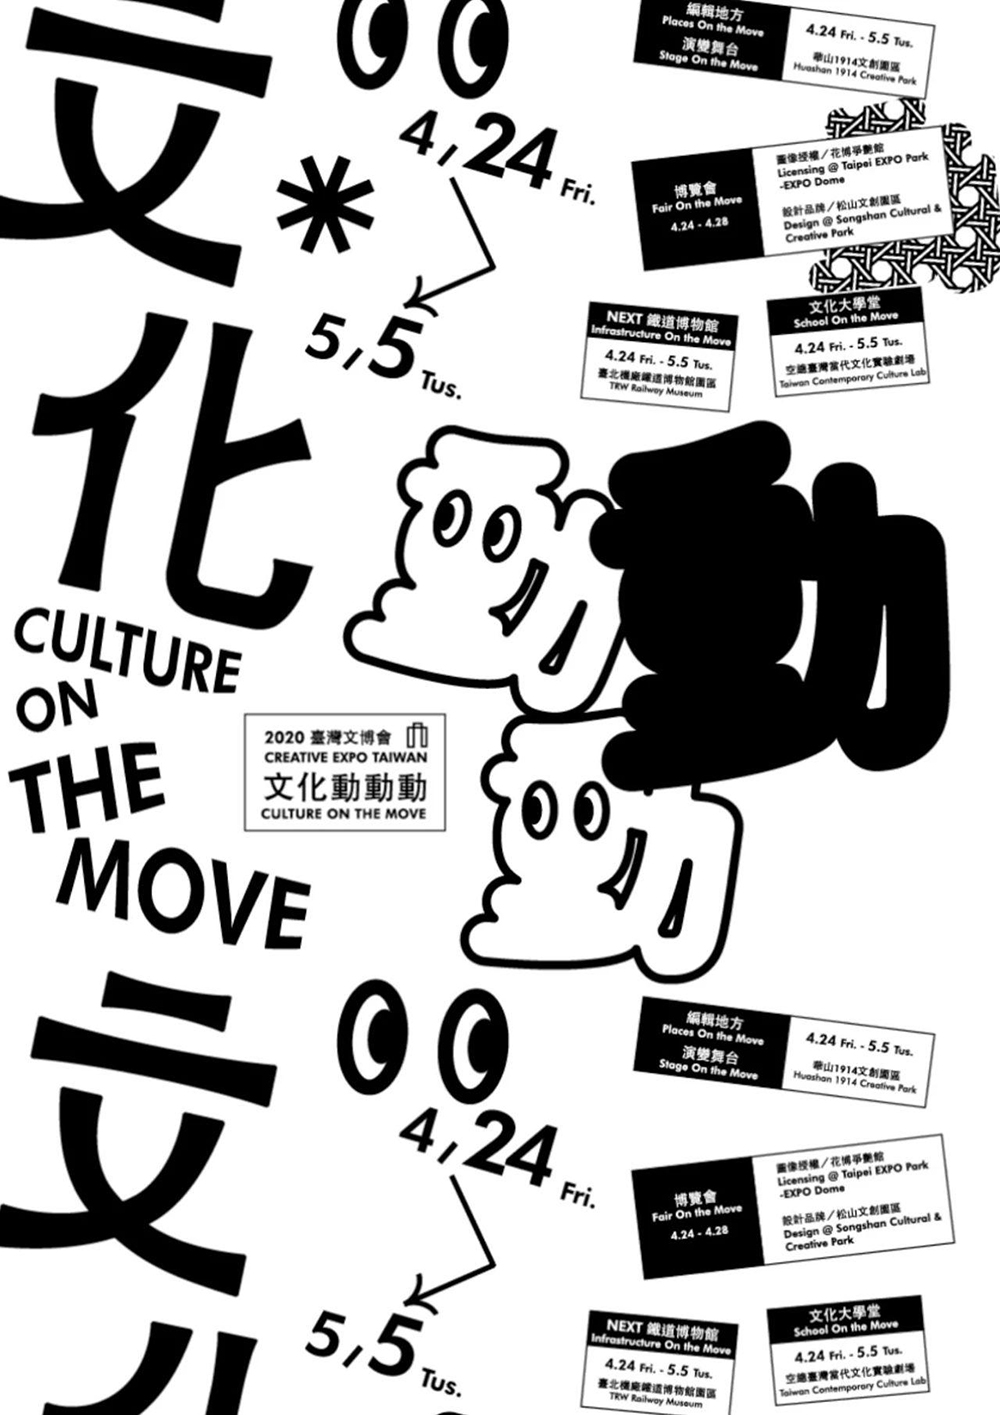 设计师涂闵翔的学生海报作品